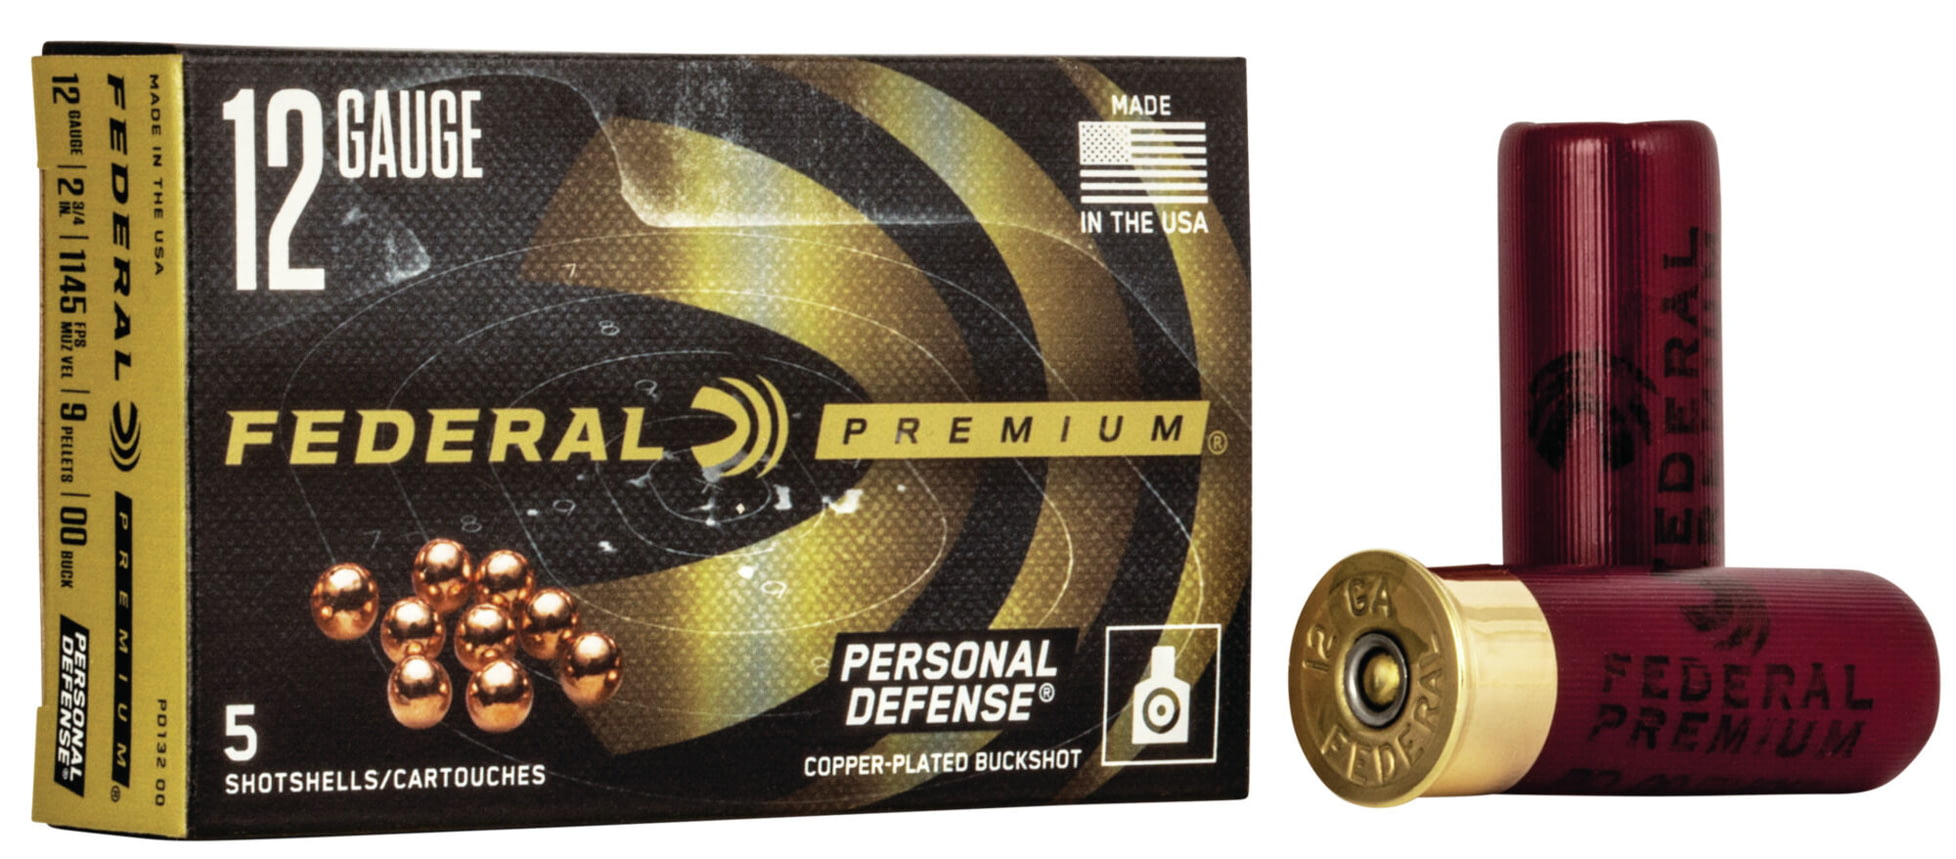 Federal Premium Premium Personal Defense 12 Gauge 9 Pellets Personal Defense Shotshell with FLITECONTROL Wad Centerfire Shotgun Ammunition